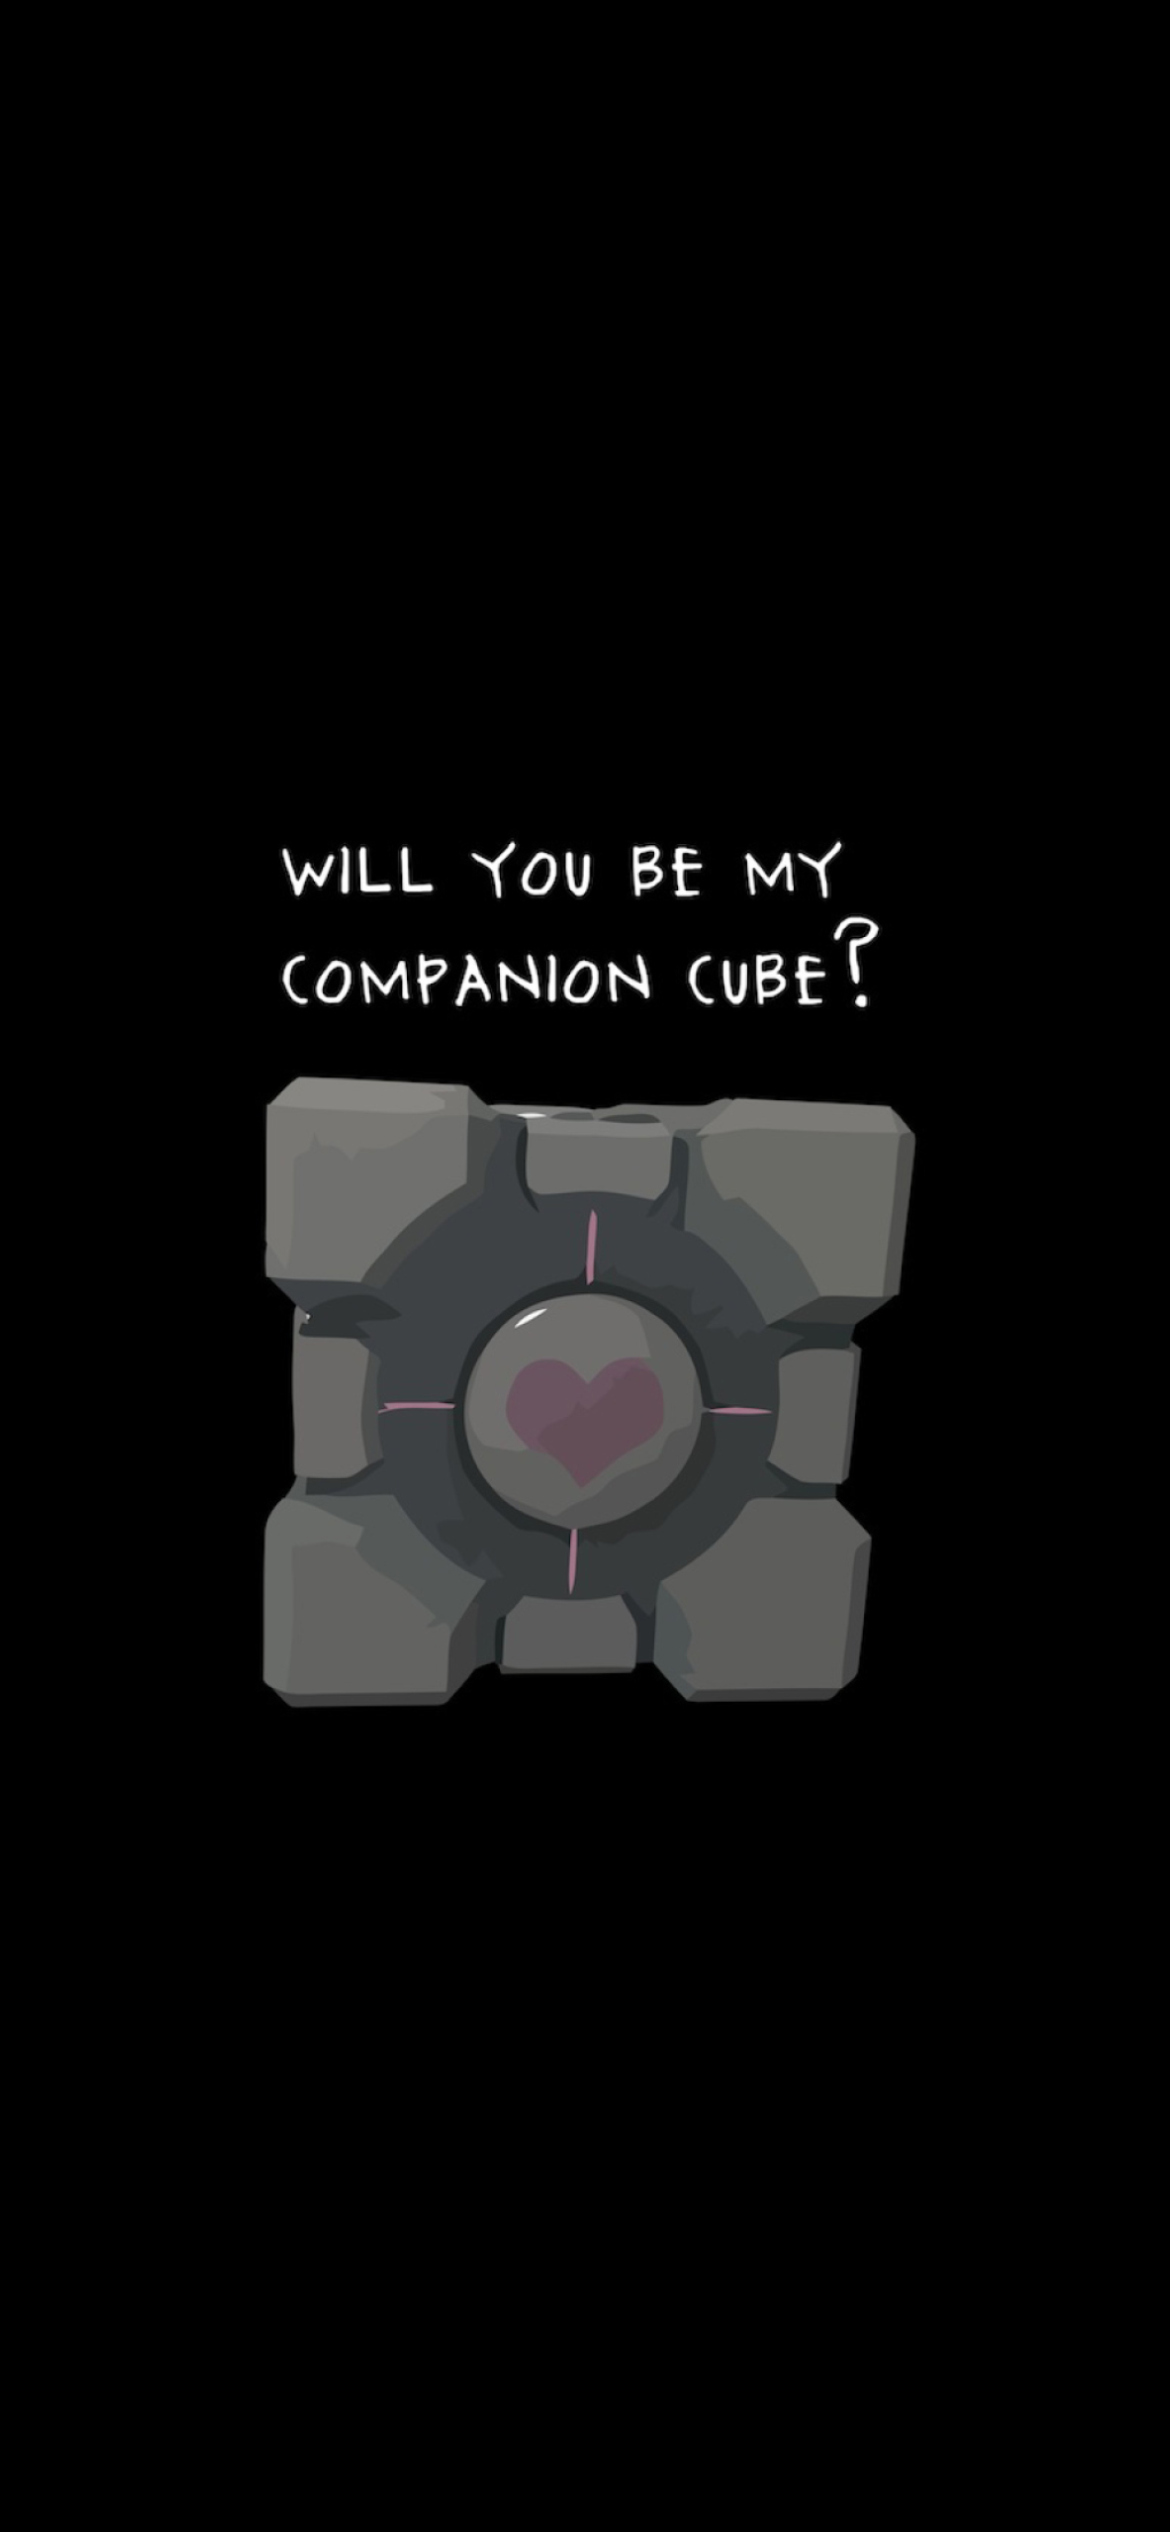 Companion Cube wallpaper 1170x2532